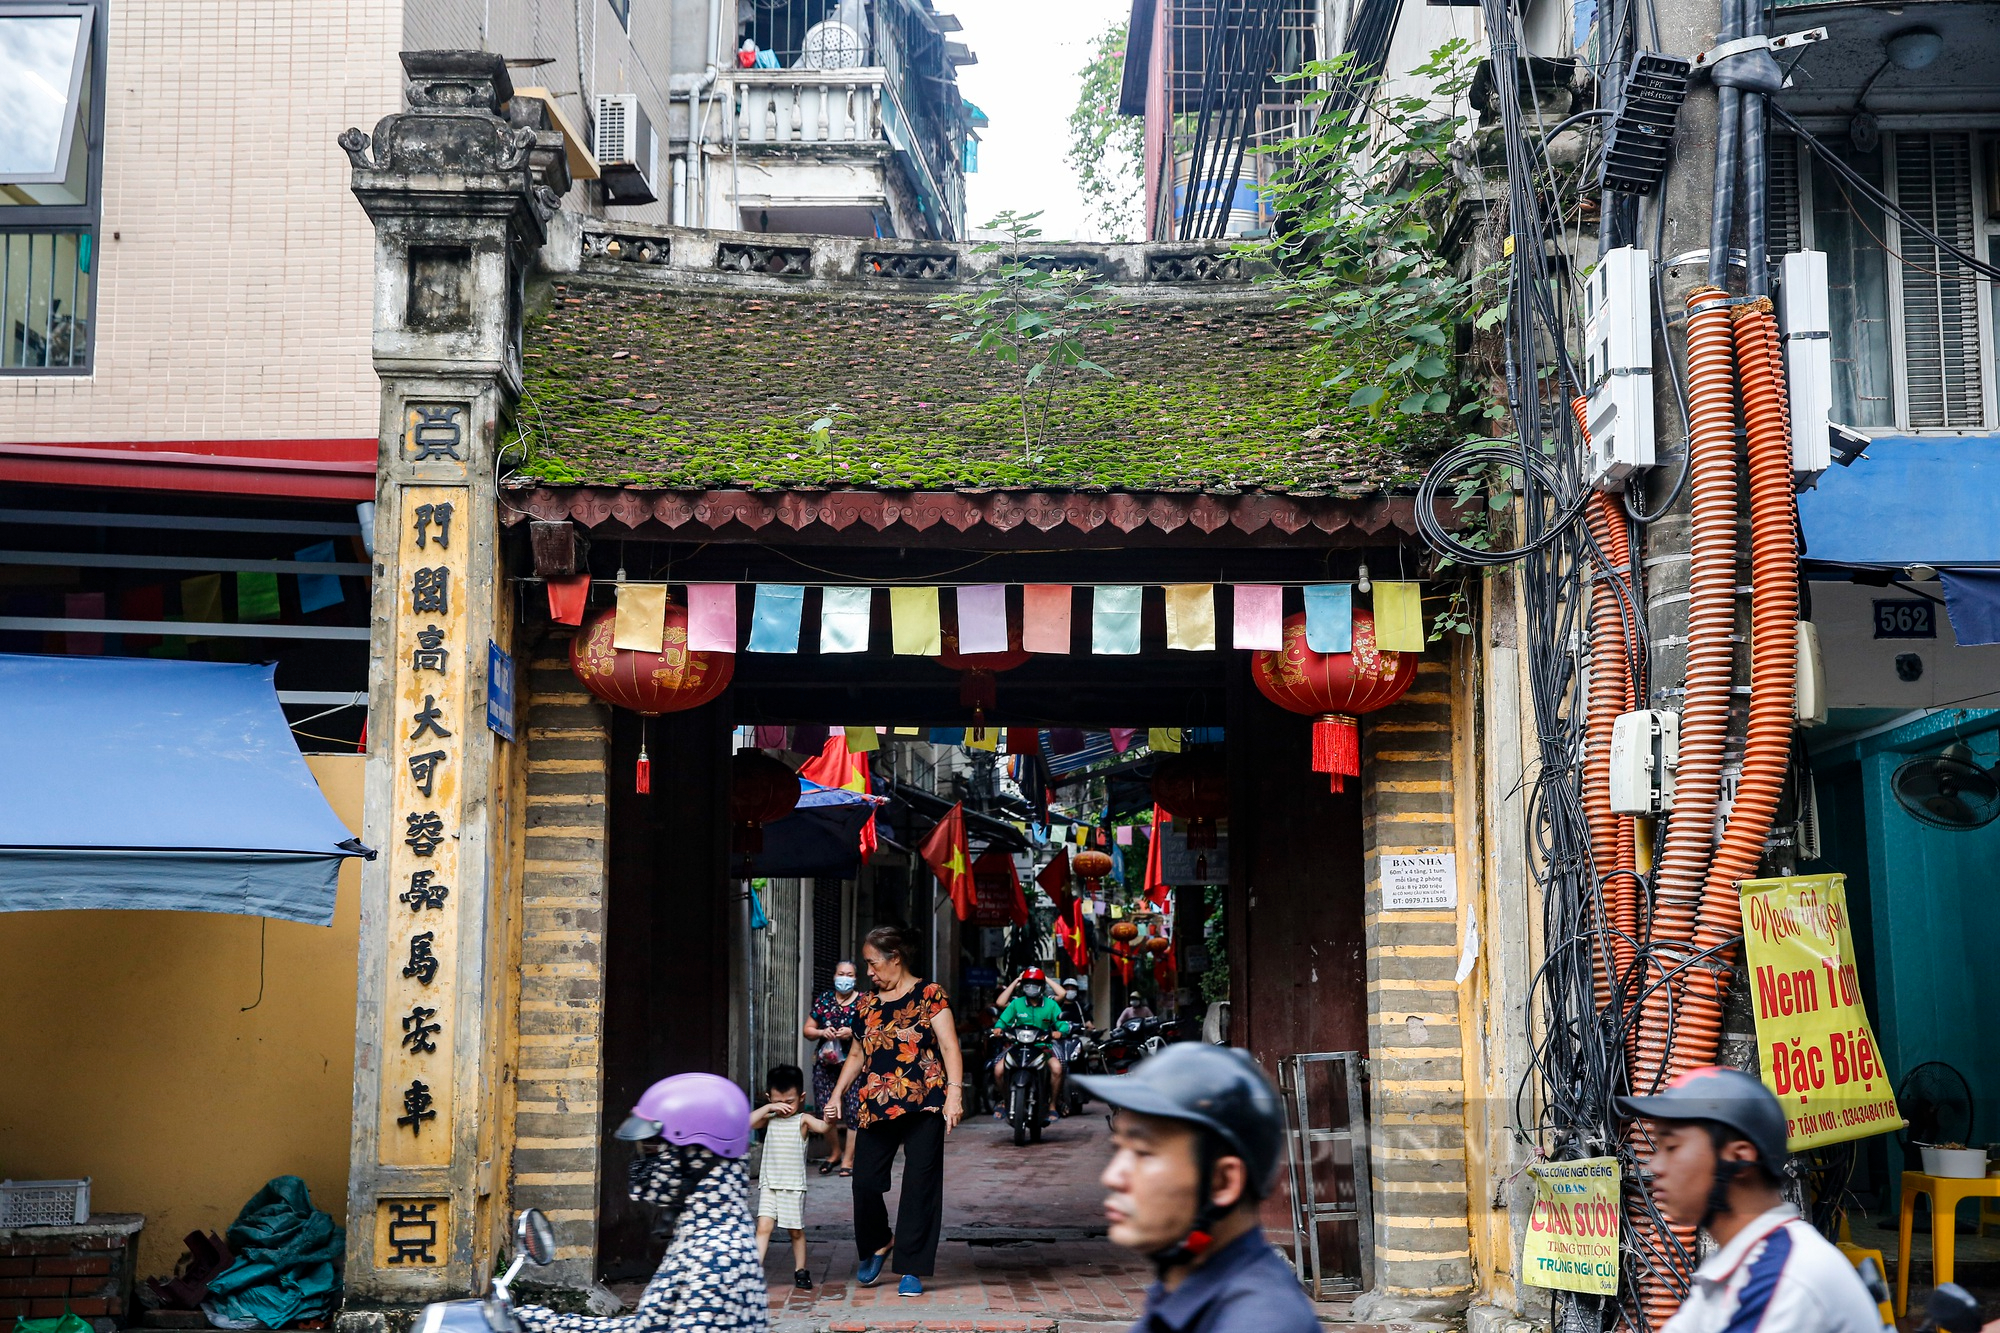 Trầm trồ con phố nhiều cổng, đình làng nhất Hà Nội - Ảnh 3.